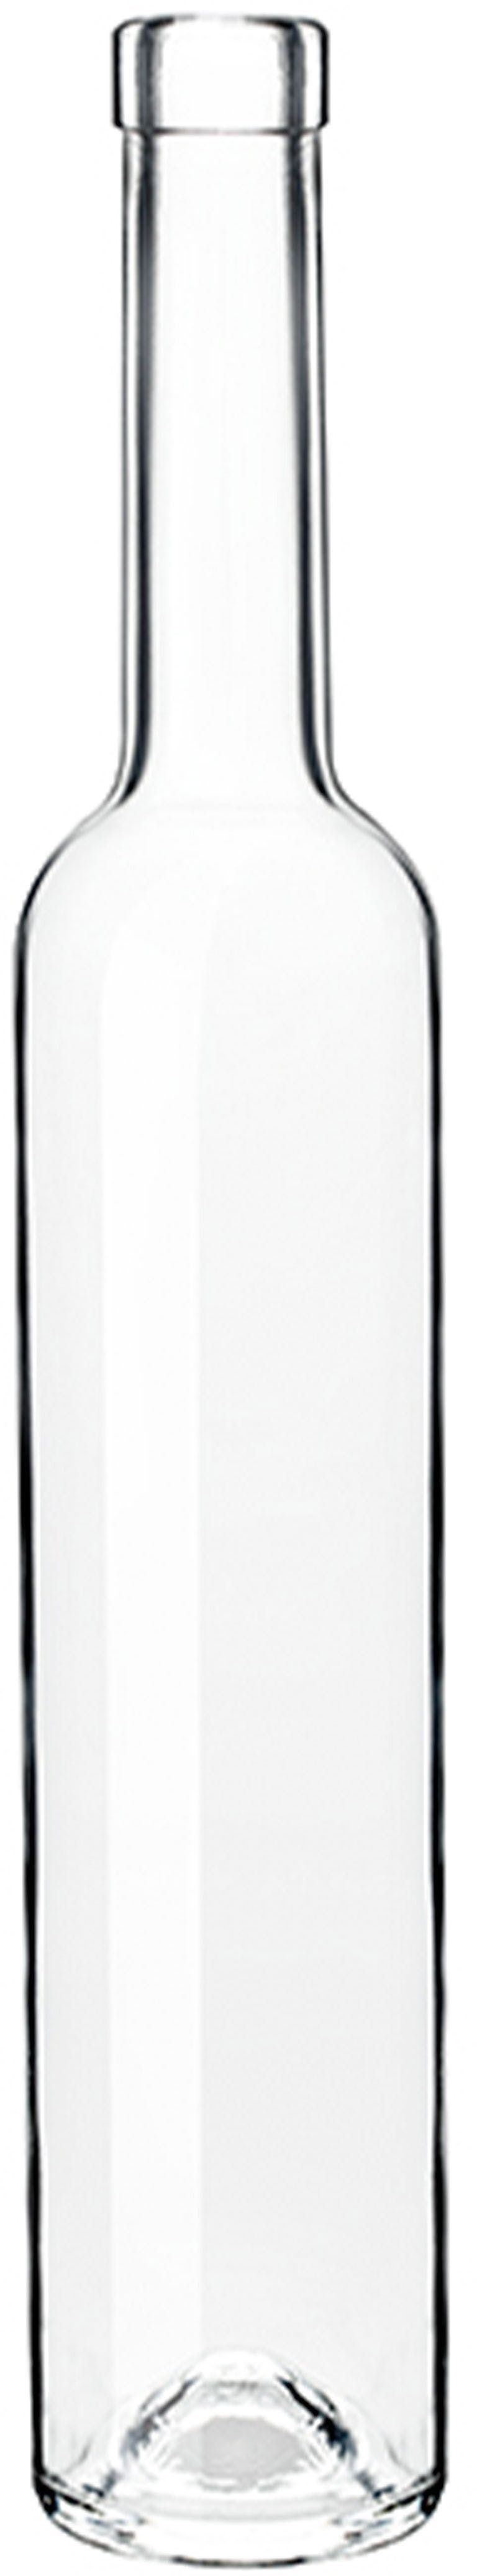 Bottiglia bordolese   S 25 ALLEGE 500 ml BG-Sughero